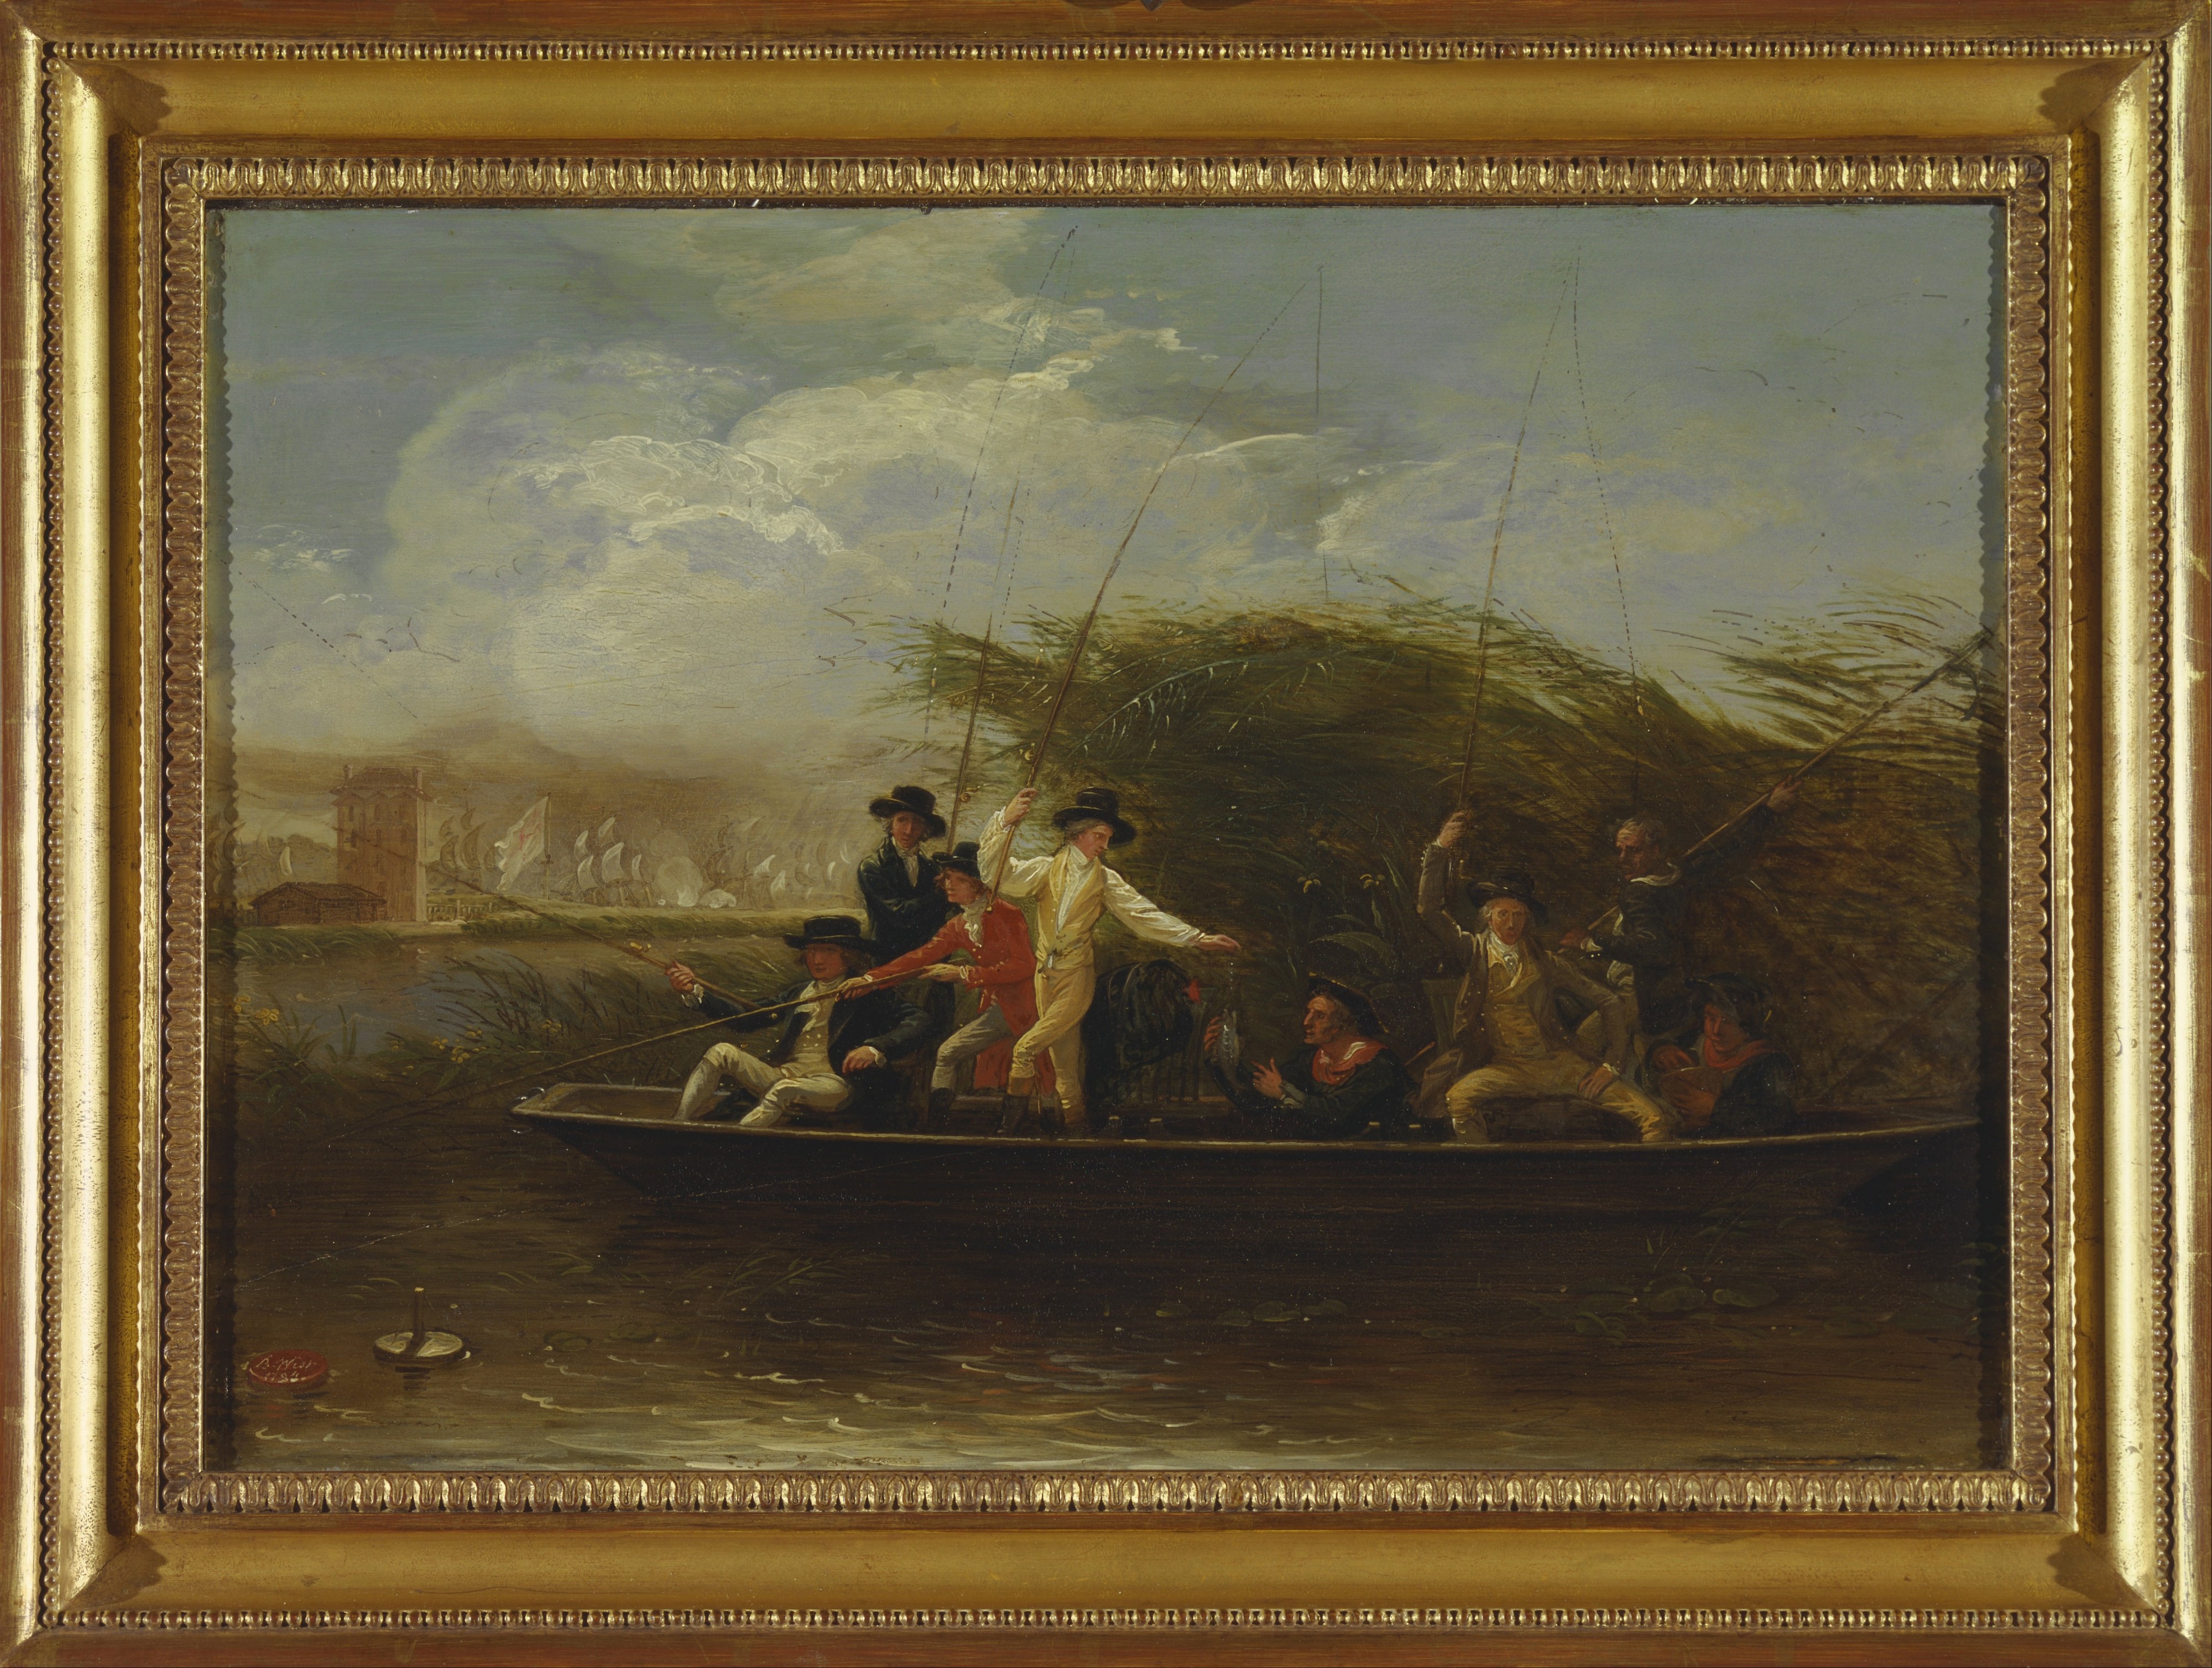 Benjamin West - Gentlemen Fishing - Google Art Project (2410038)